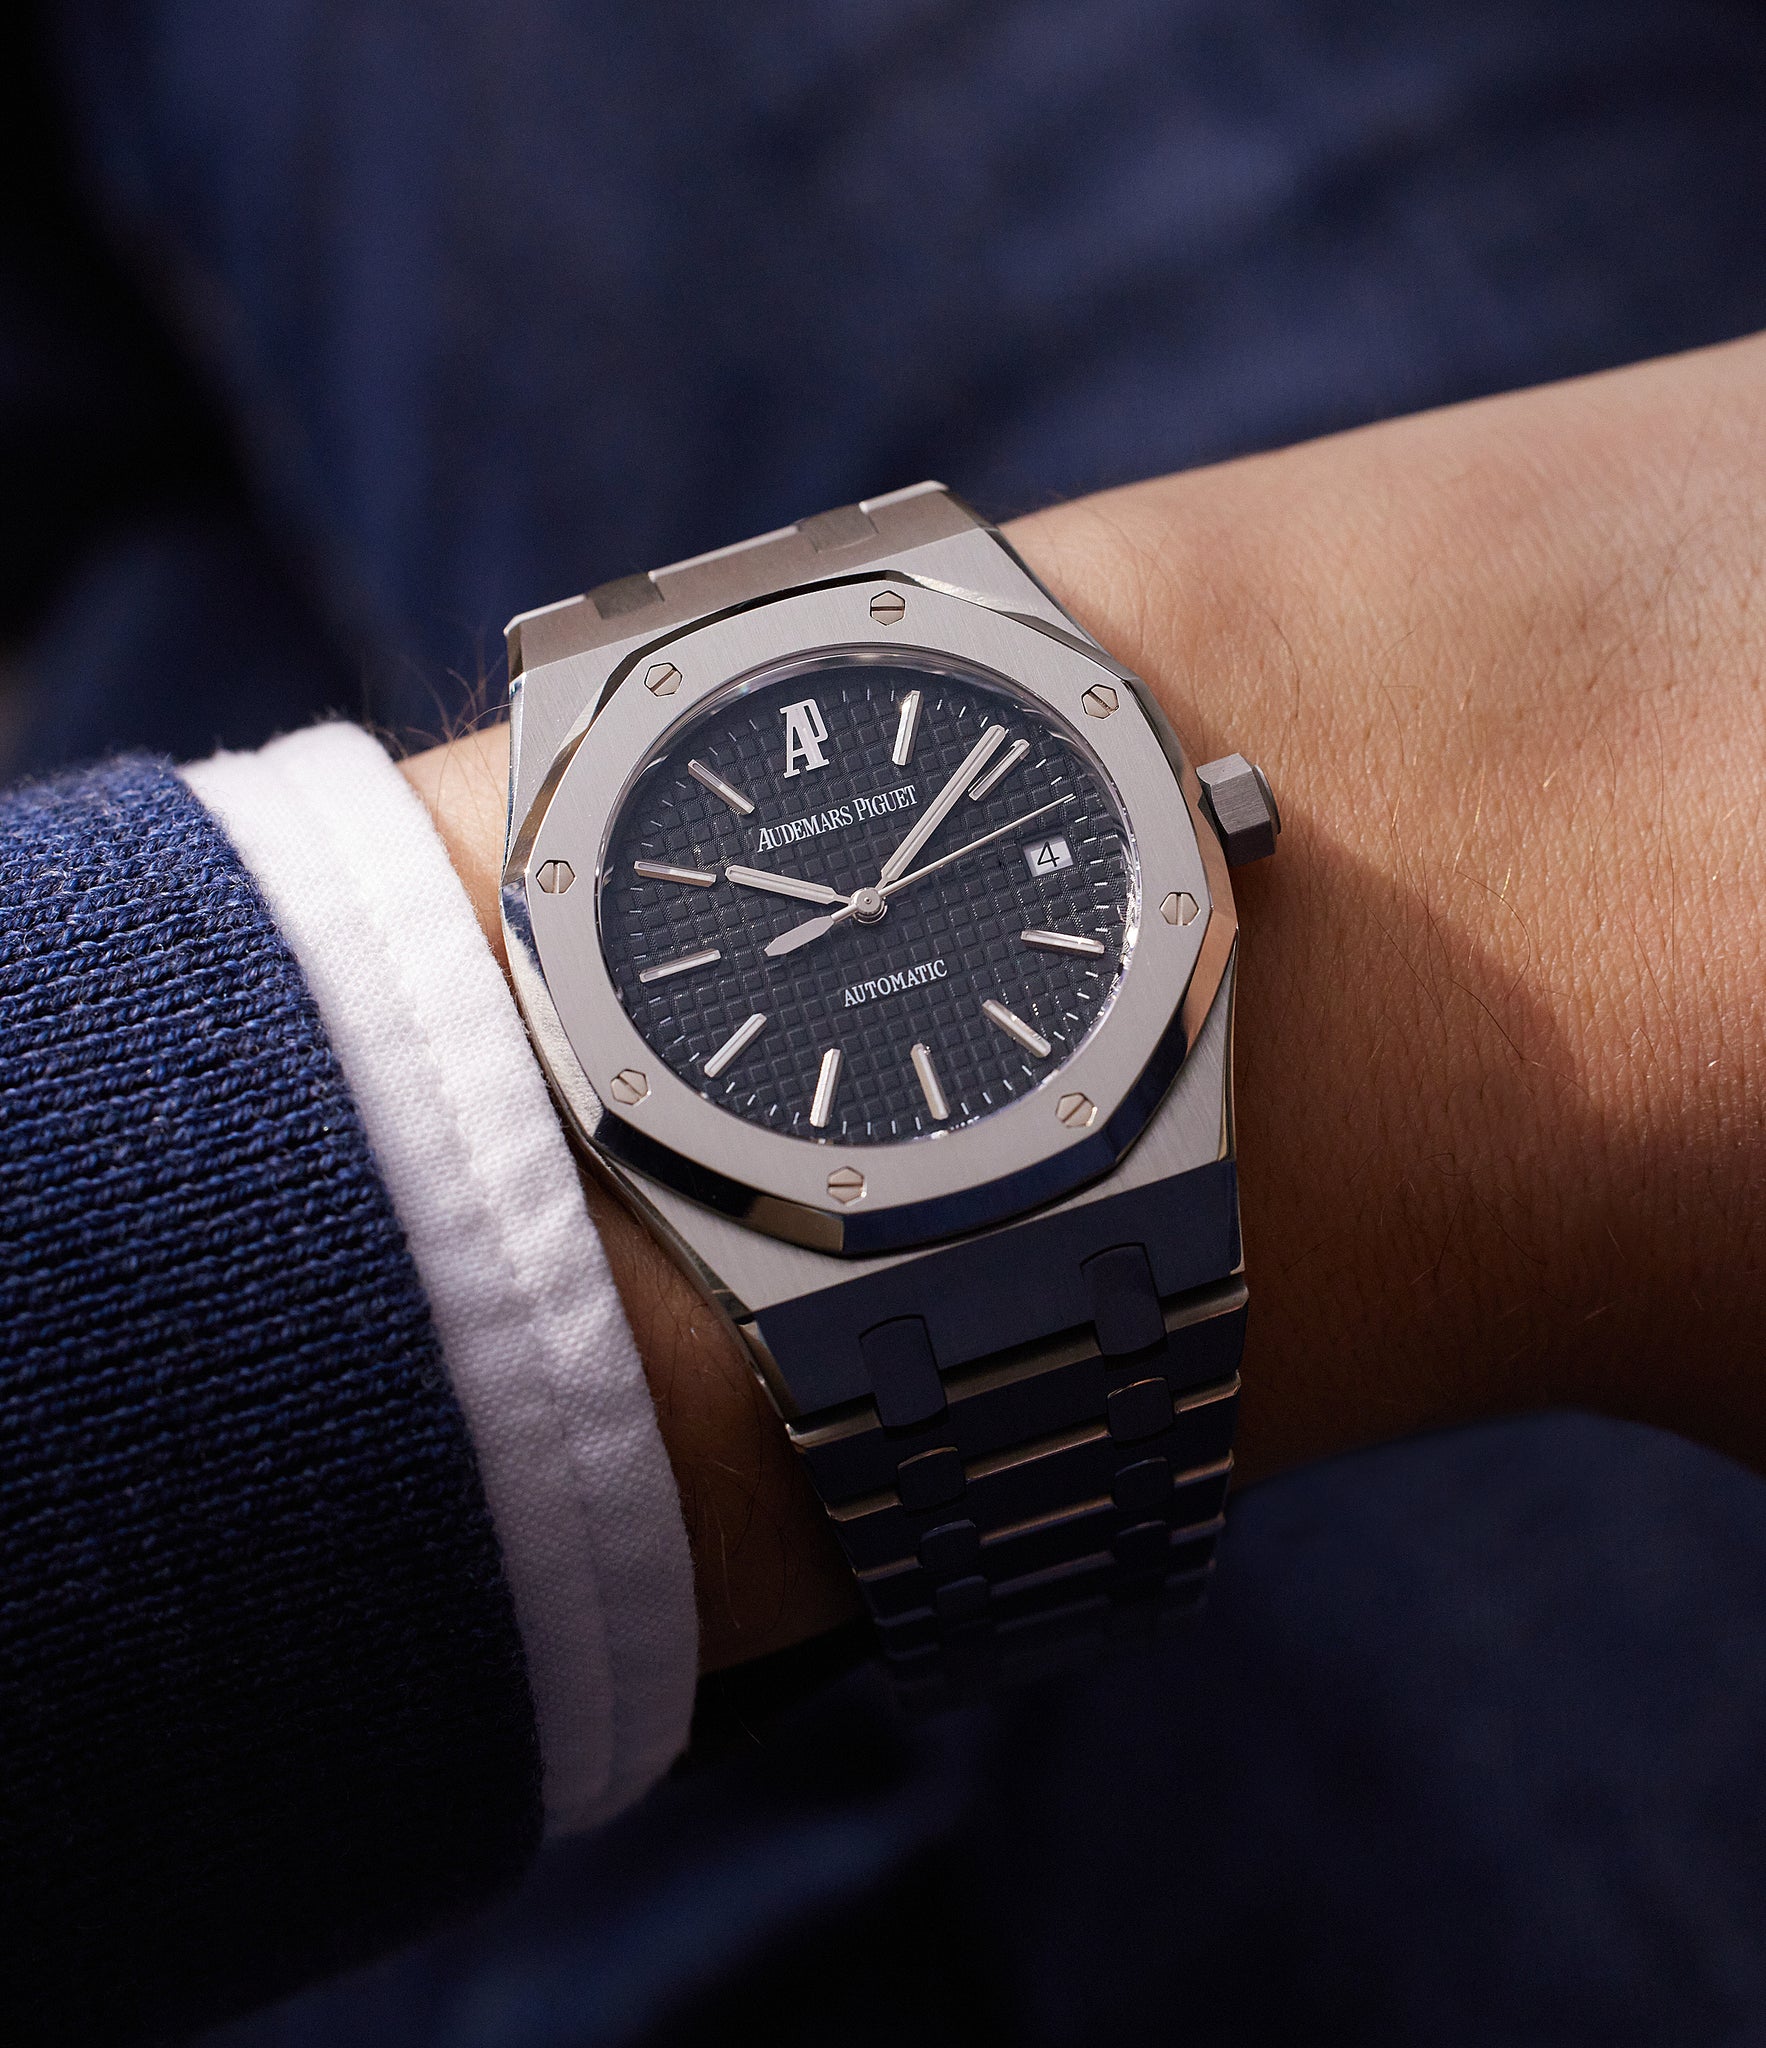 Royal Oak 15300ST | Stainless Steel | Buy Audemars Piguet watch – A ...